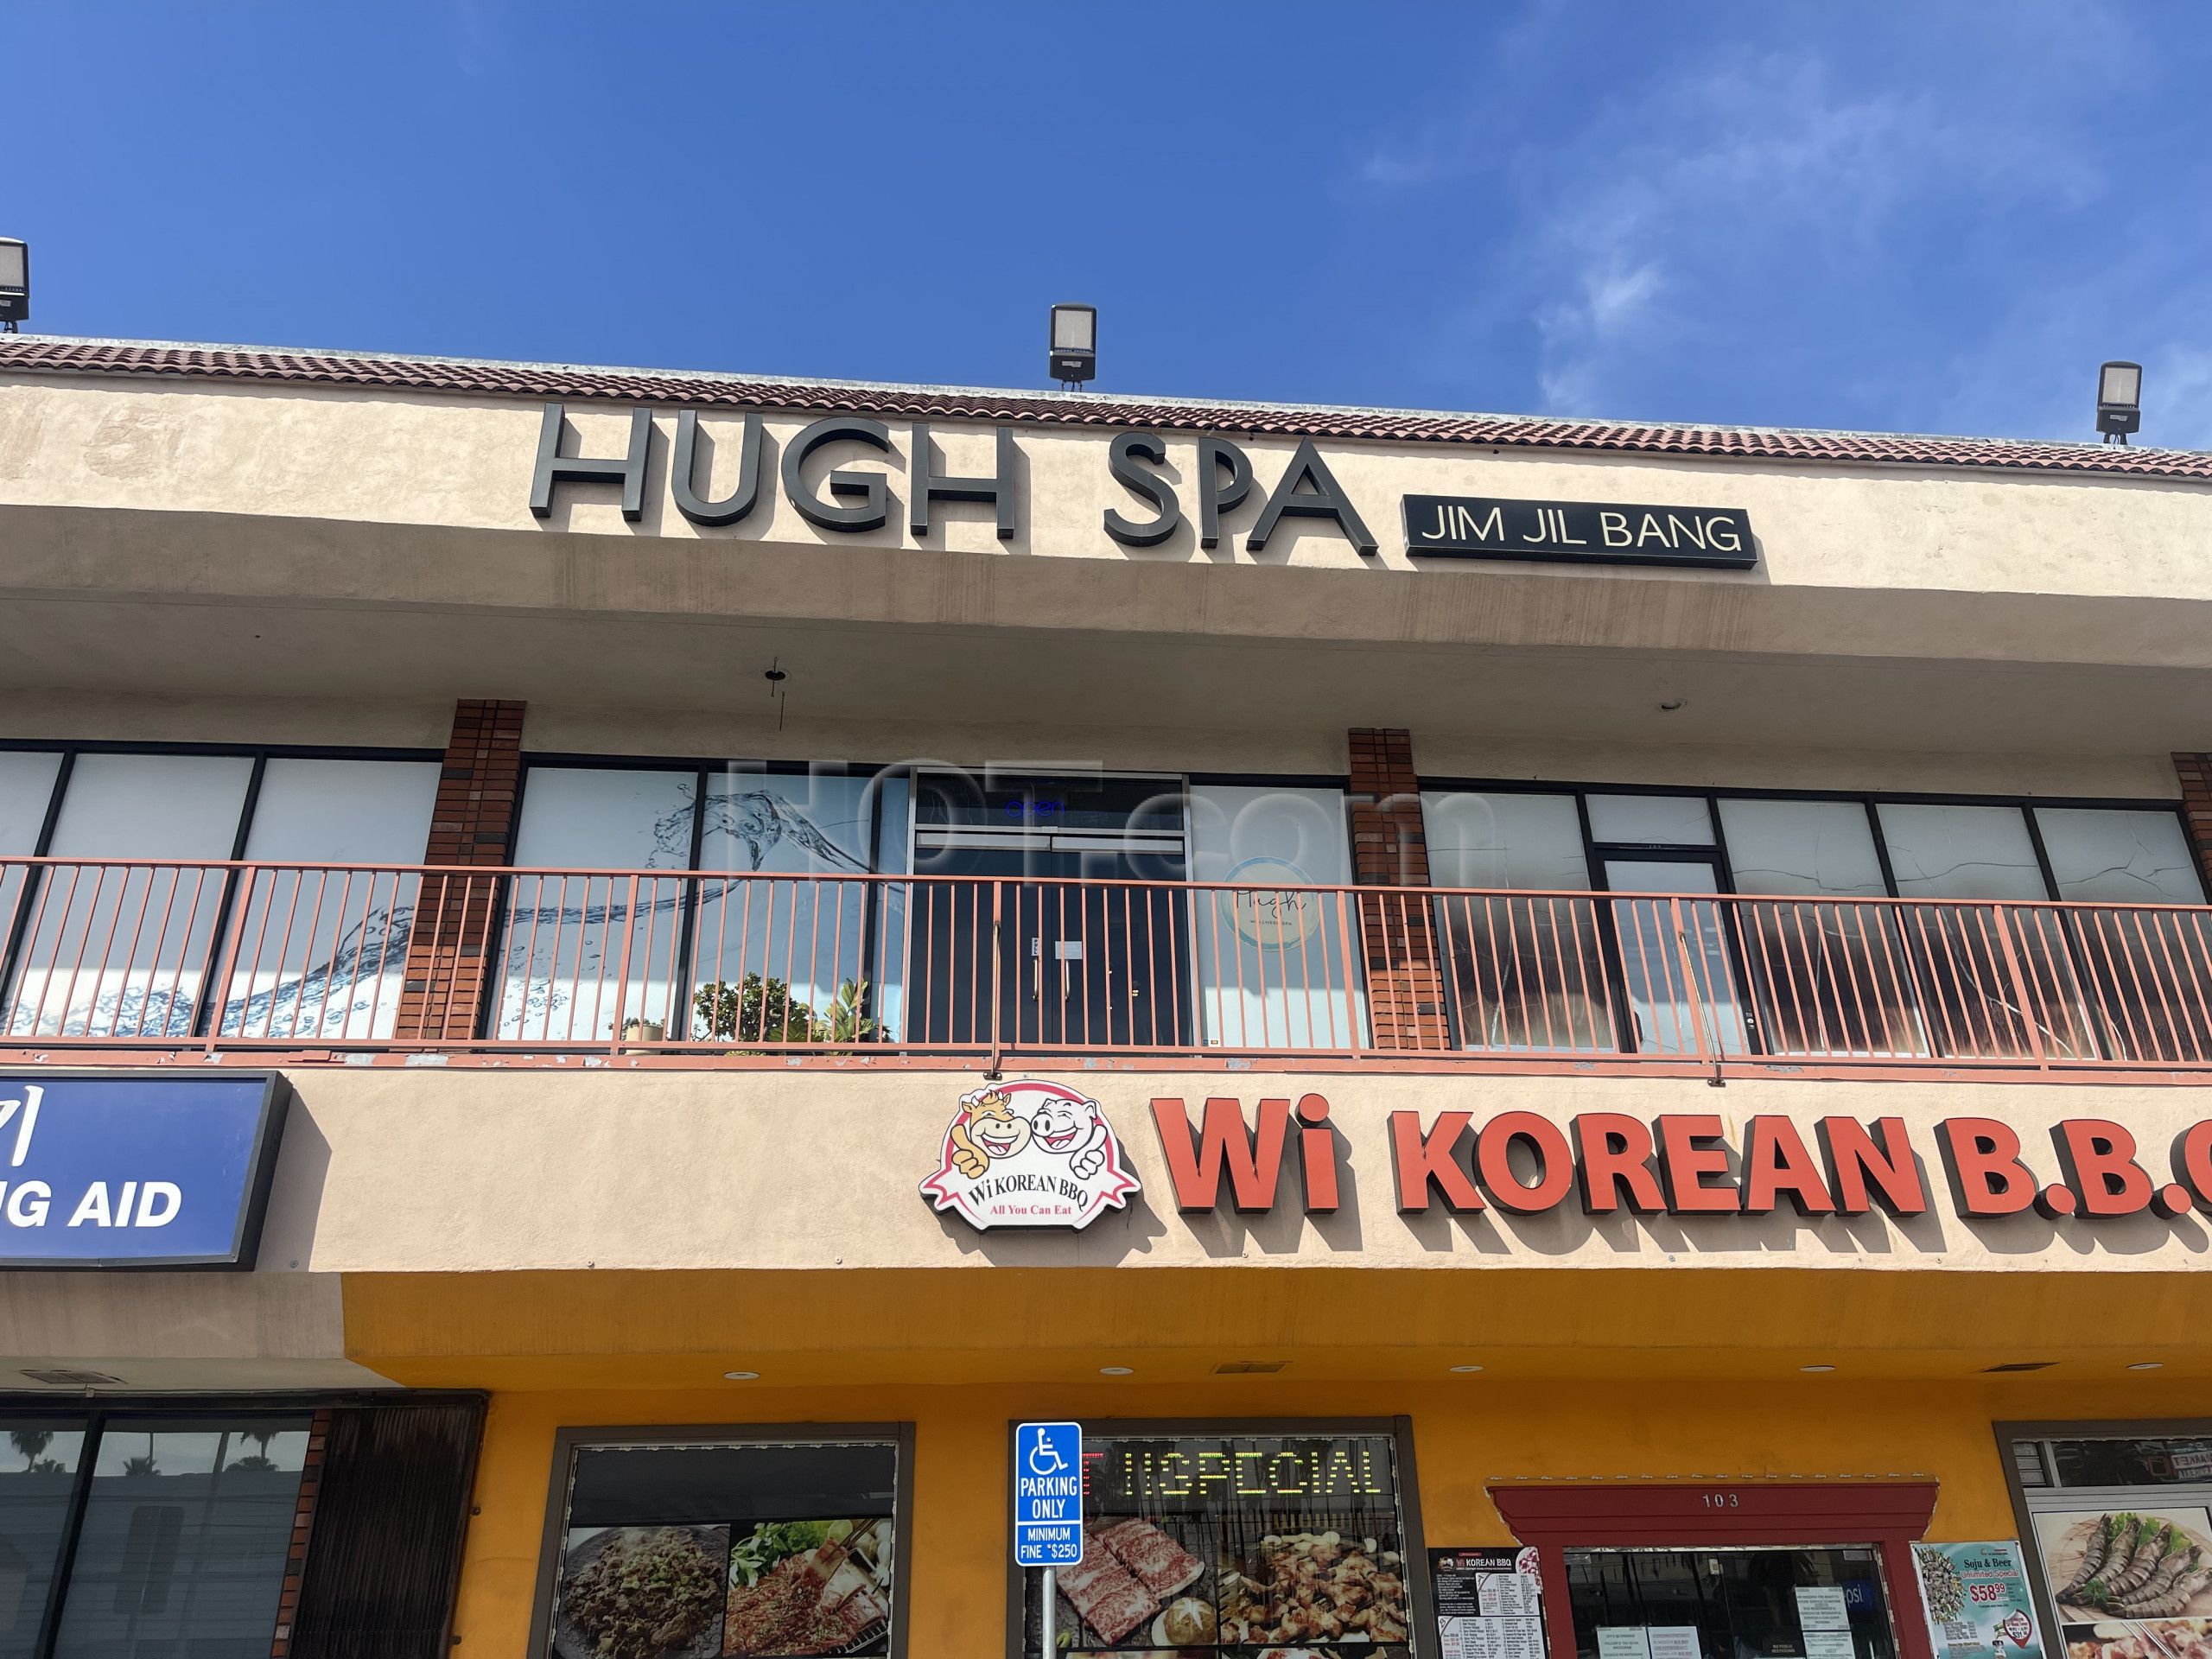 Los Angeles, California Hugh Spa